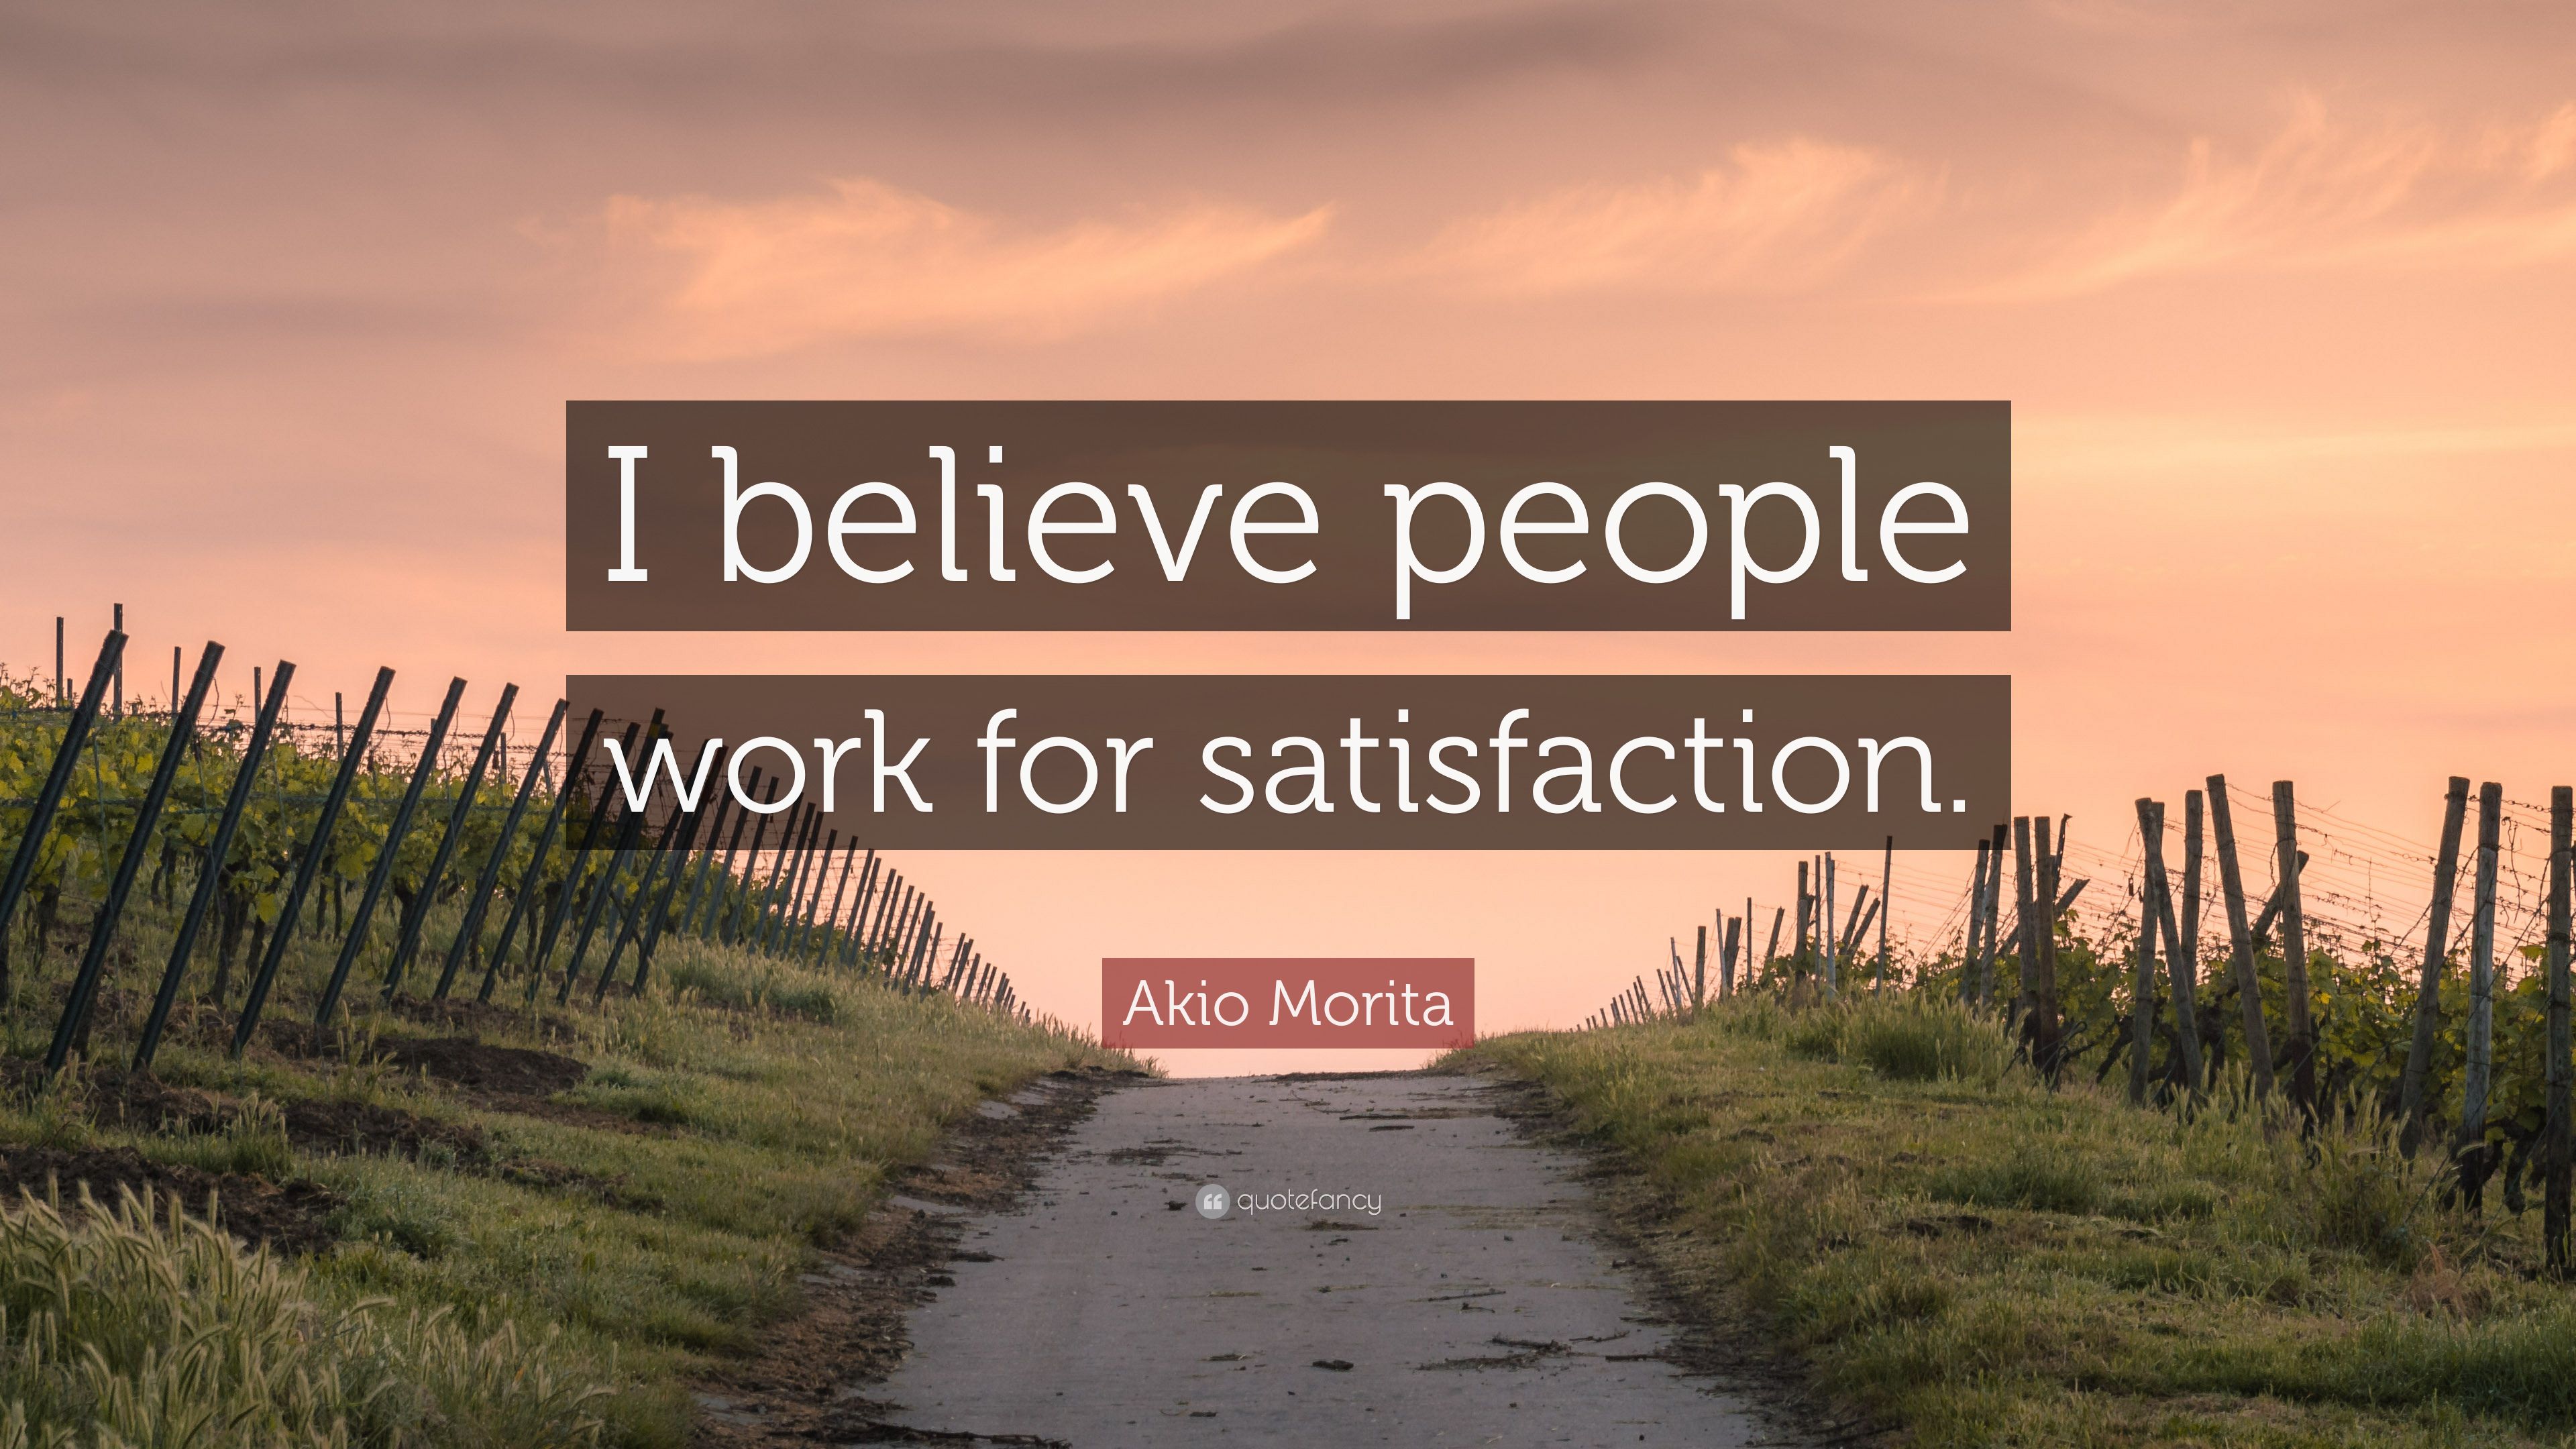 Akio Morita Quote: “I believe people work for satisfaction.” (7 wallpaper)